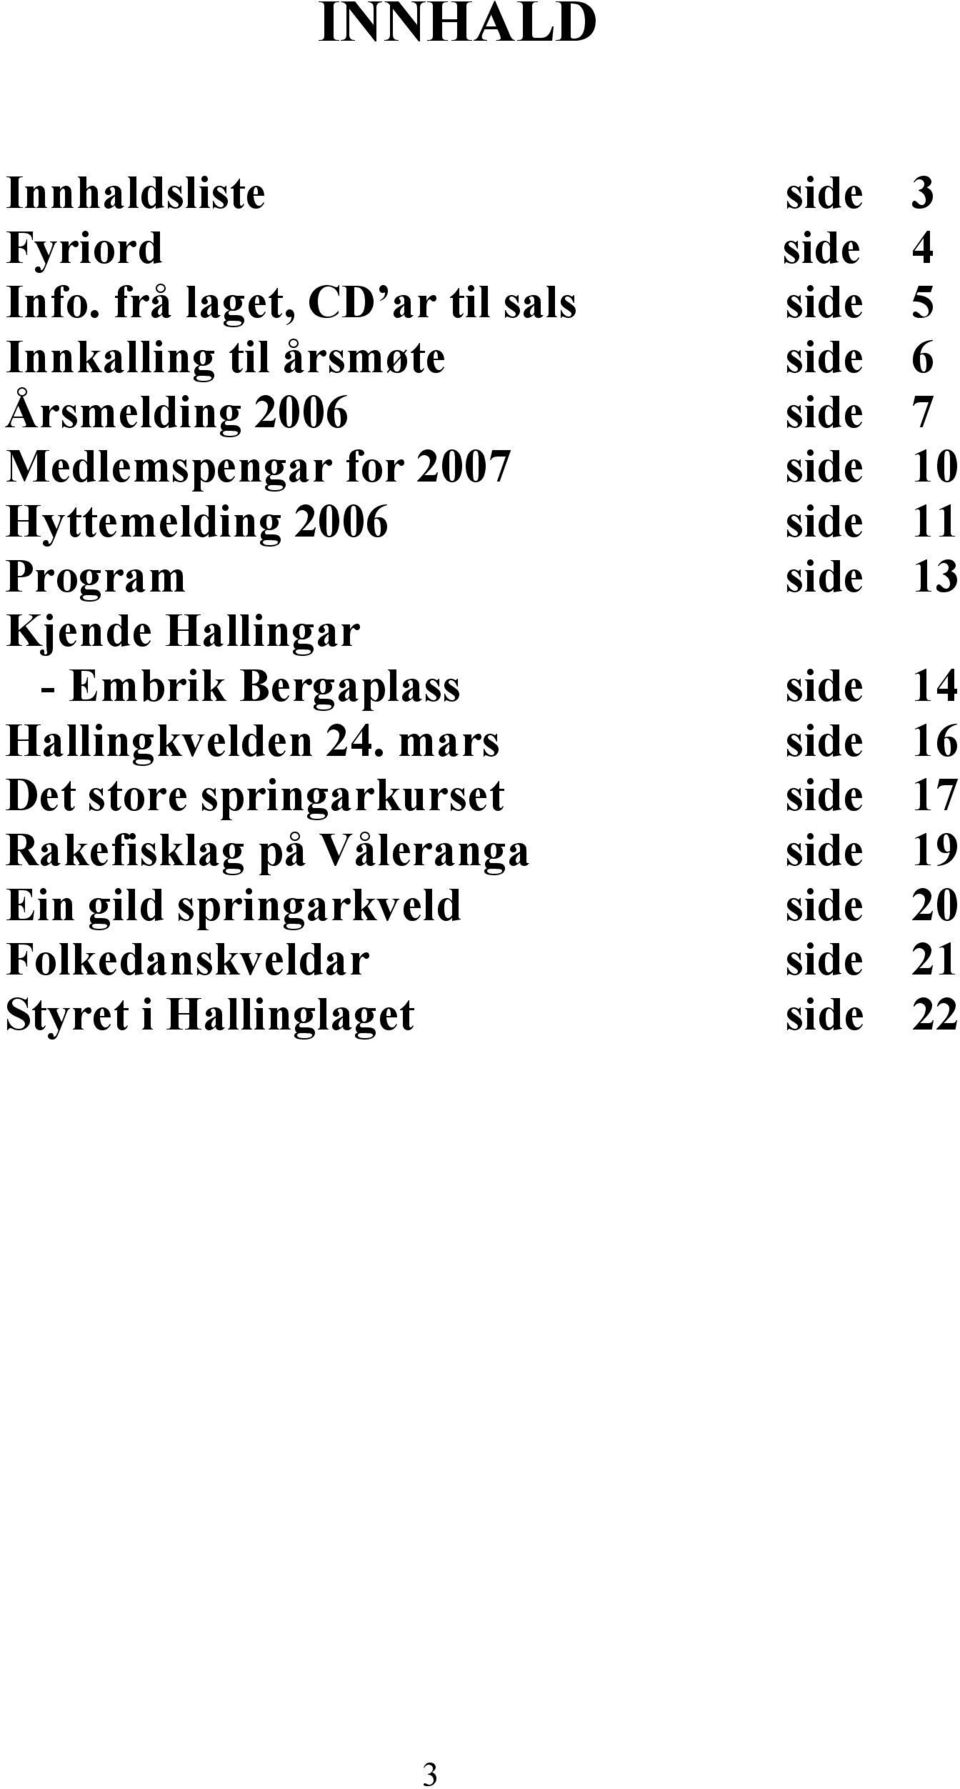 side 10 Hyttemelding 2006 side 11 Program side 13 Kjende Hallingar - Embrik Bergaplass side 14 Hallingkvelden